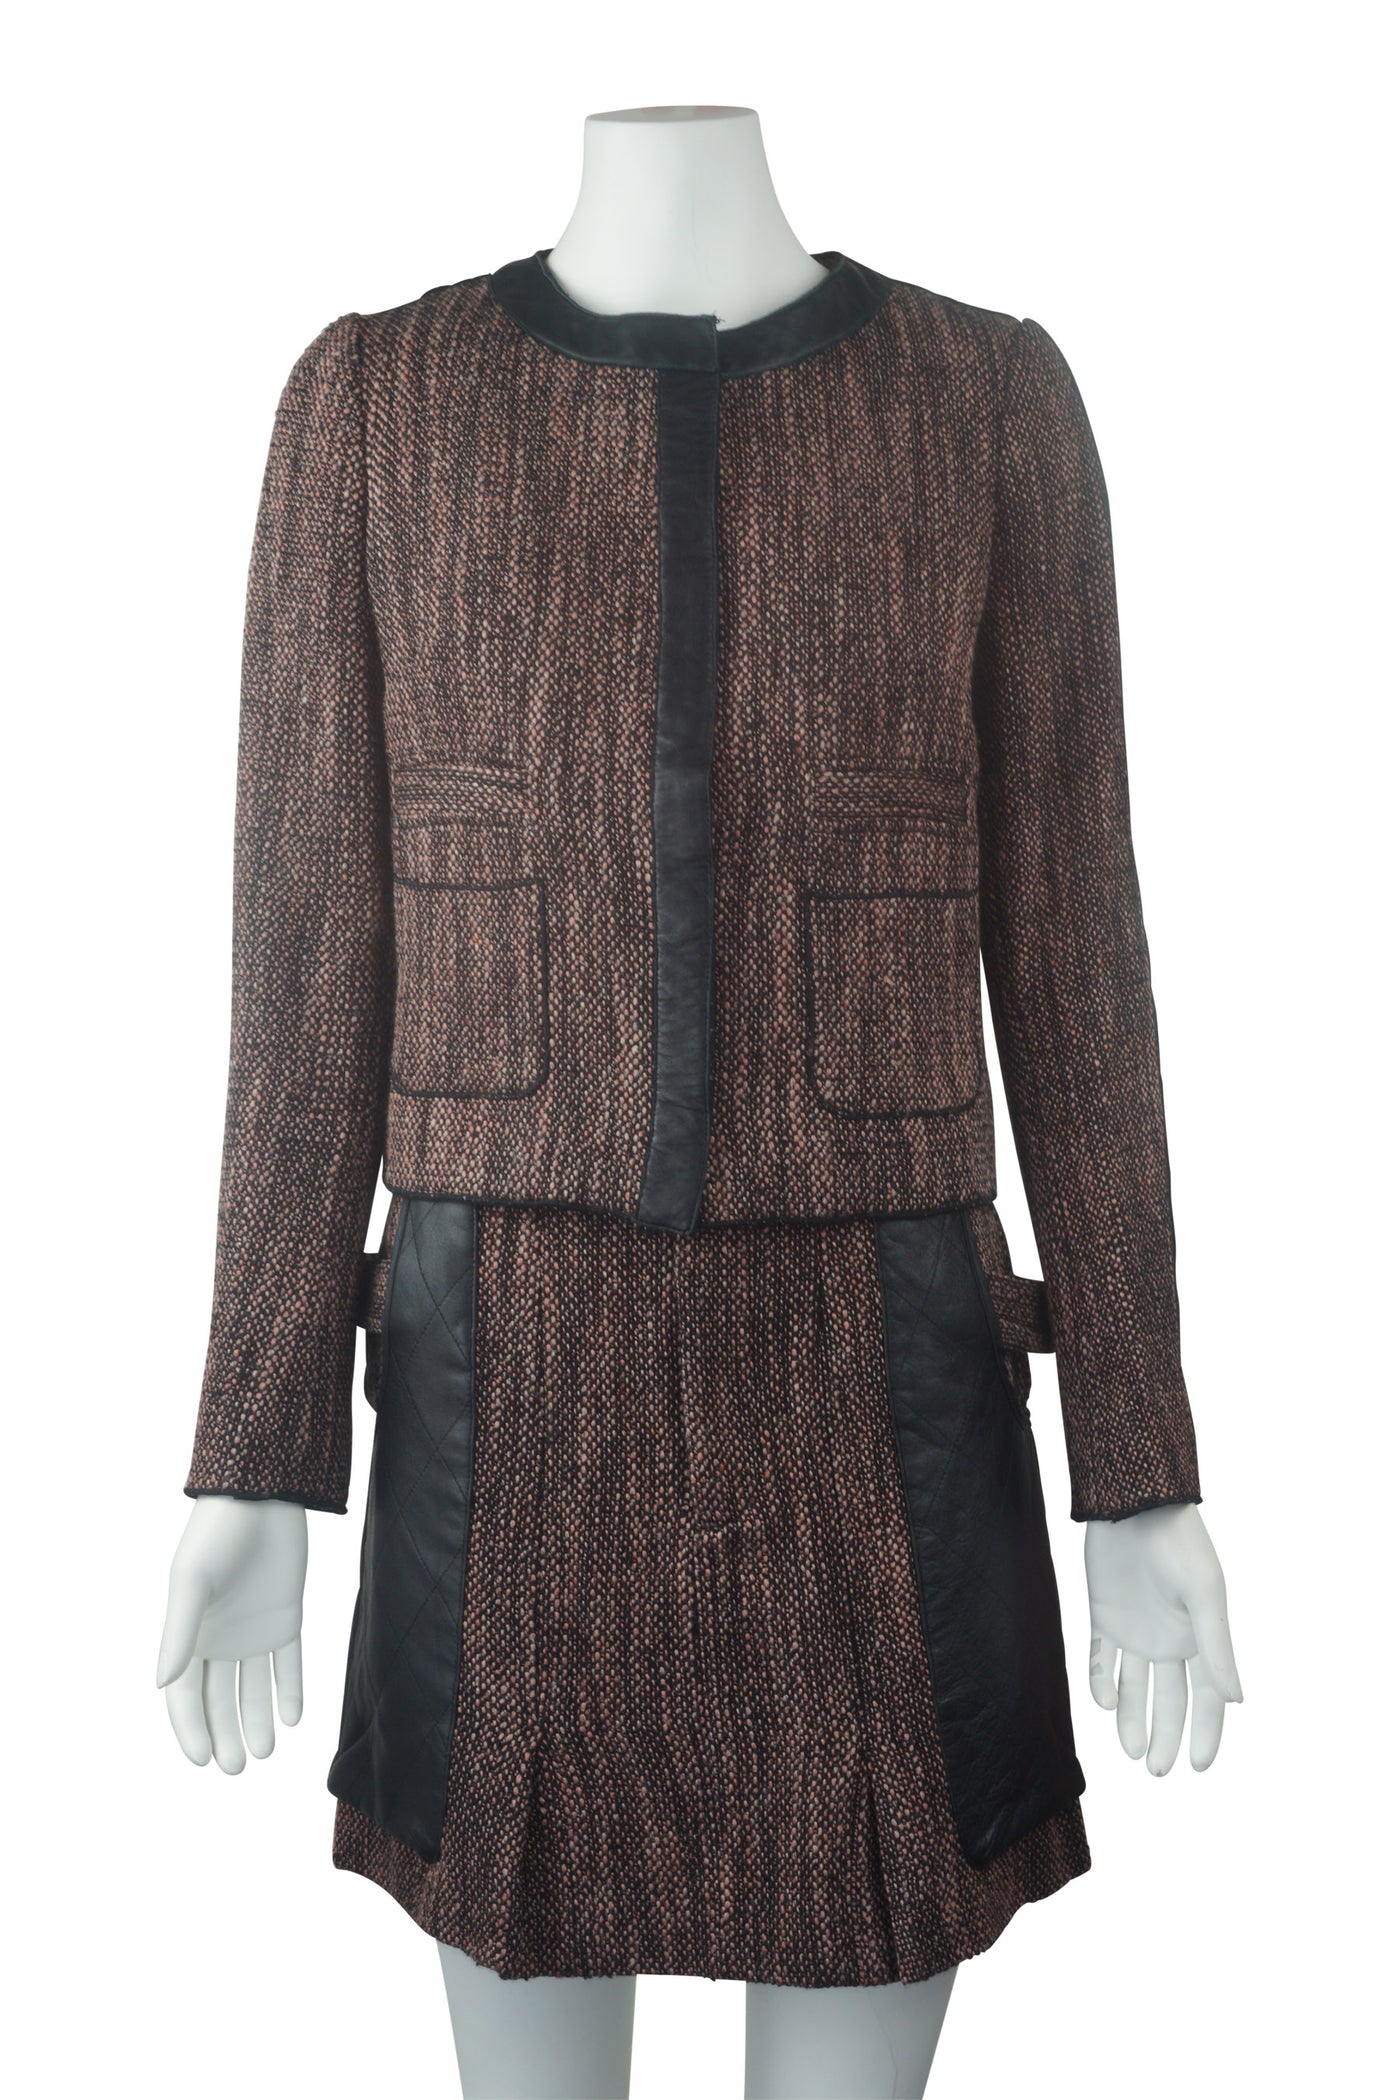 Leather trim tweed jacket